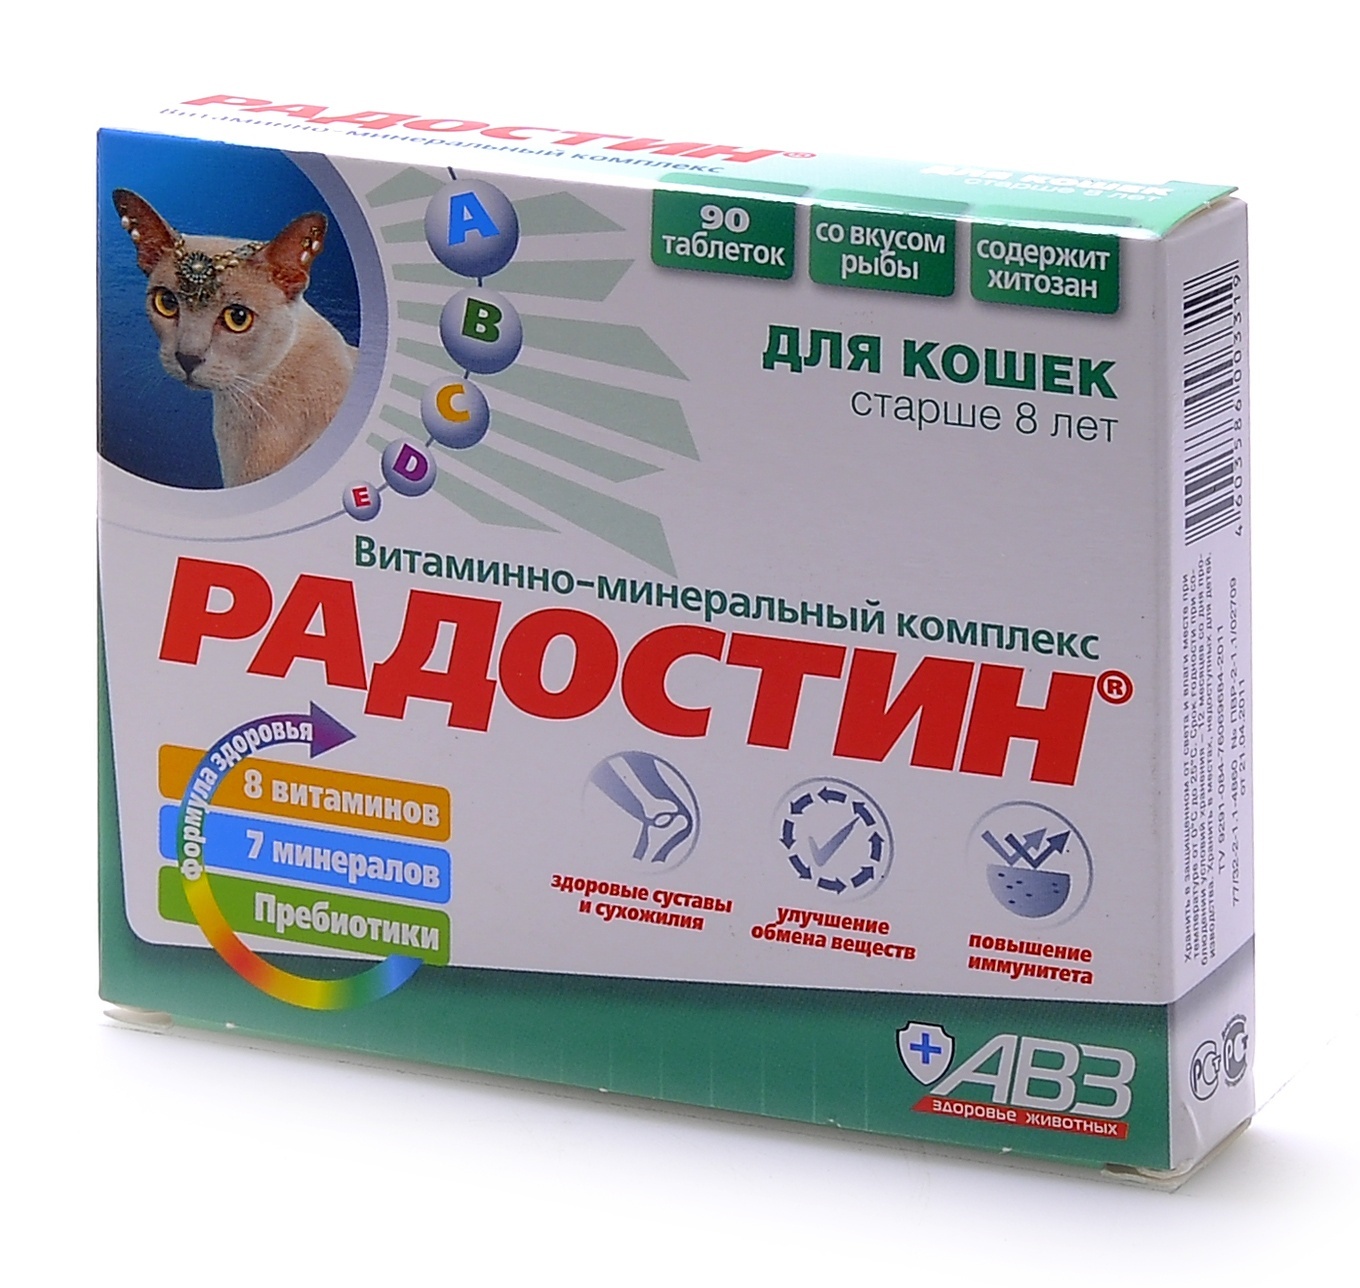 Агроветзащита Агроветзащита Радостин добавка витаминно-минеральная для кошек старше 8 лет, 90 табл. (62 г) авз авз радостин добавка витаминно минеральная для собак старше 6 лет 90 таблеток